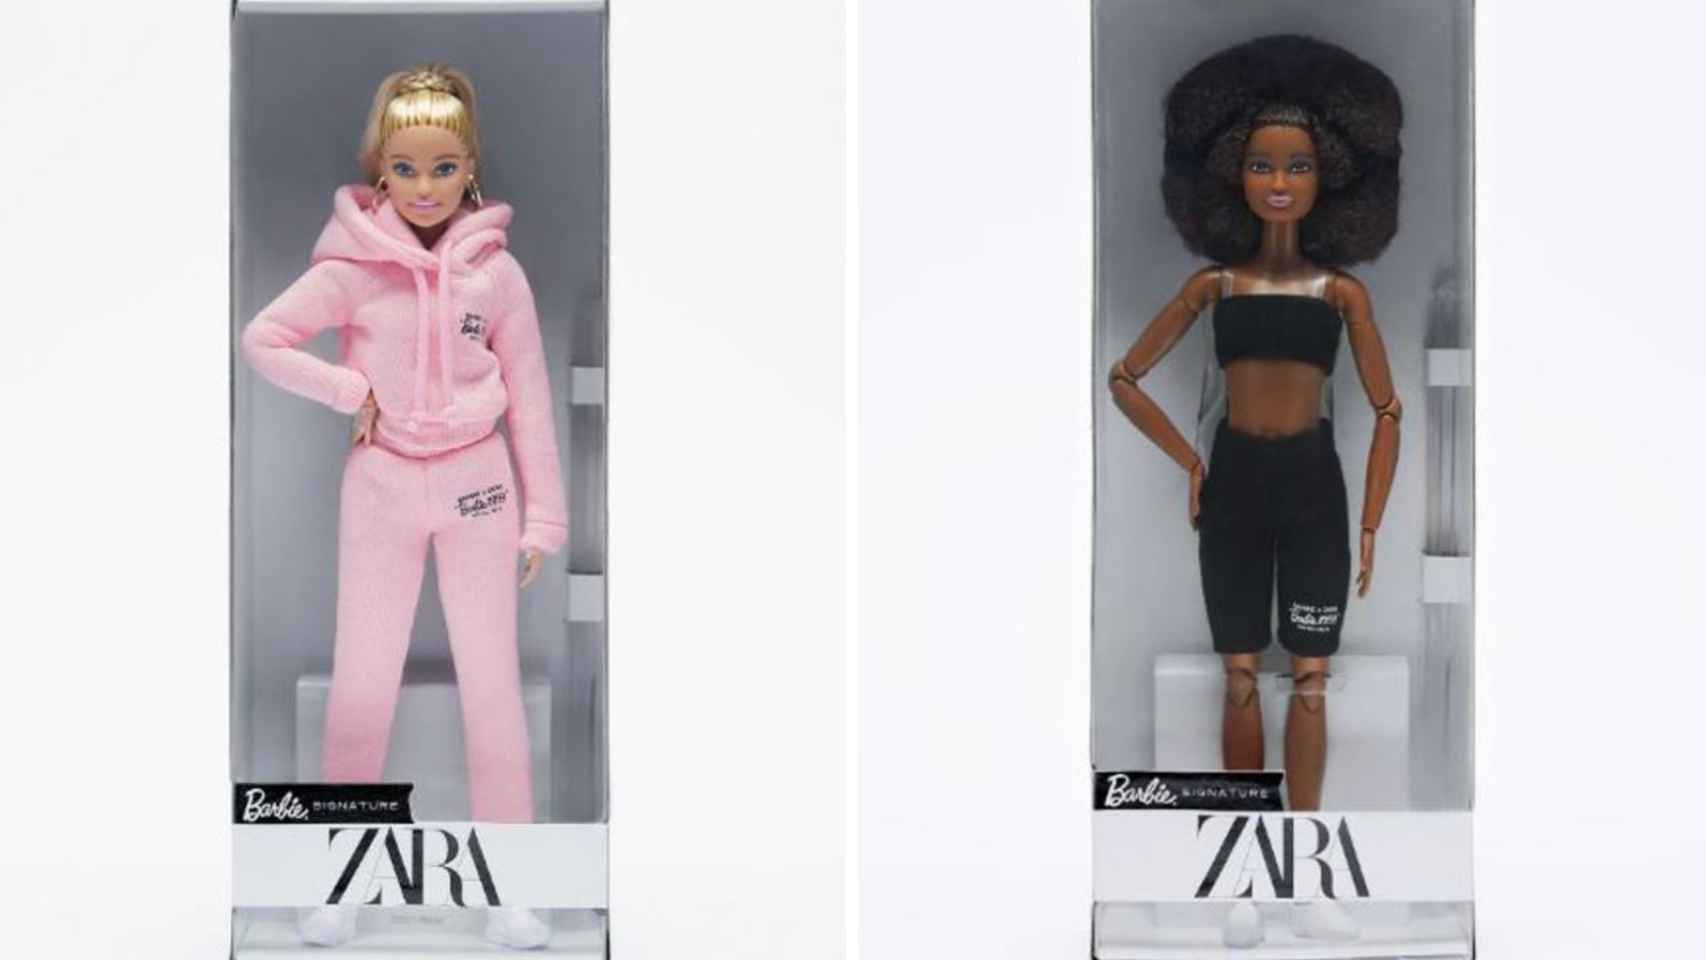 Estas son las dos muñecas con las que Zara ha recaudado fondos para Entreculturas.